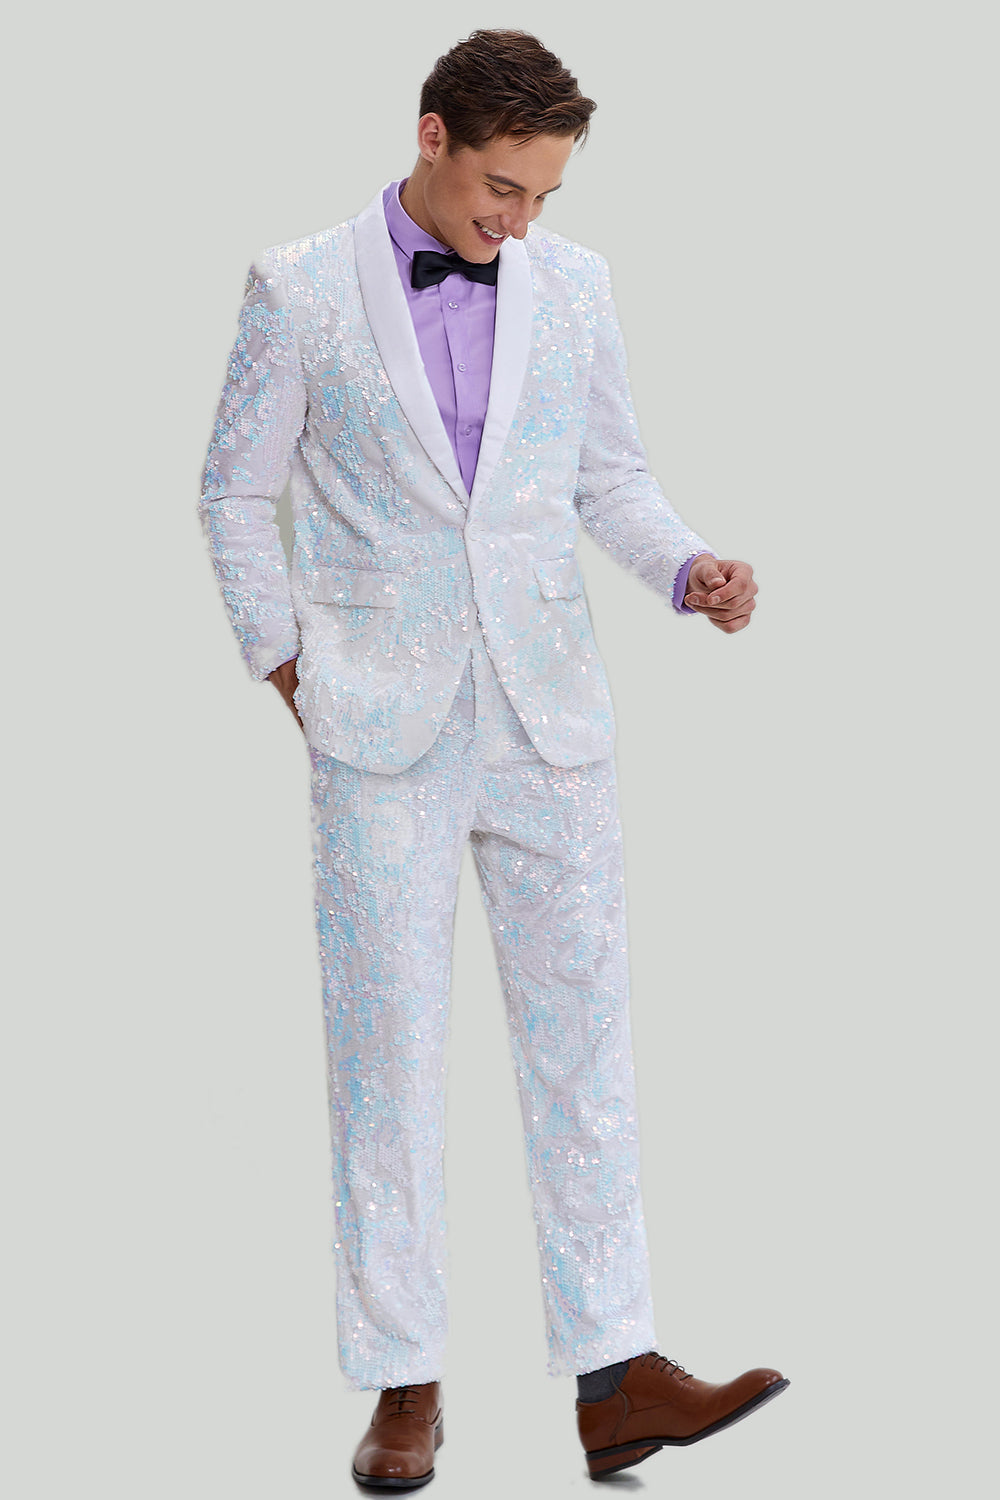 Men's Slim Fit 2 Piece Suit One Button Shawl Lapel Tuxedo for Party